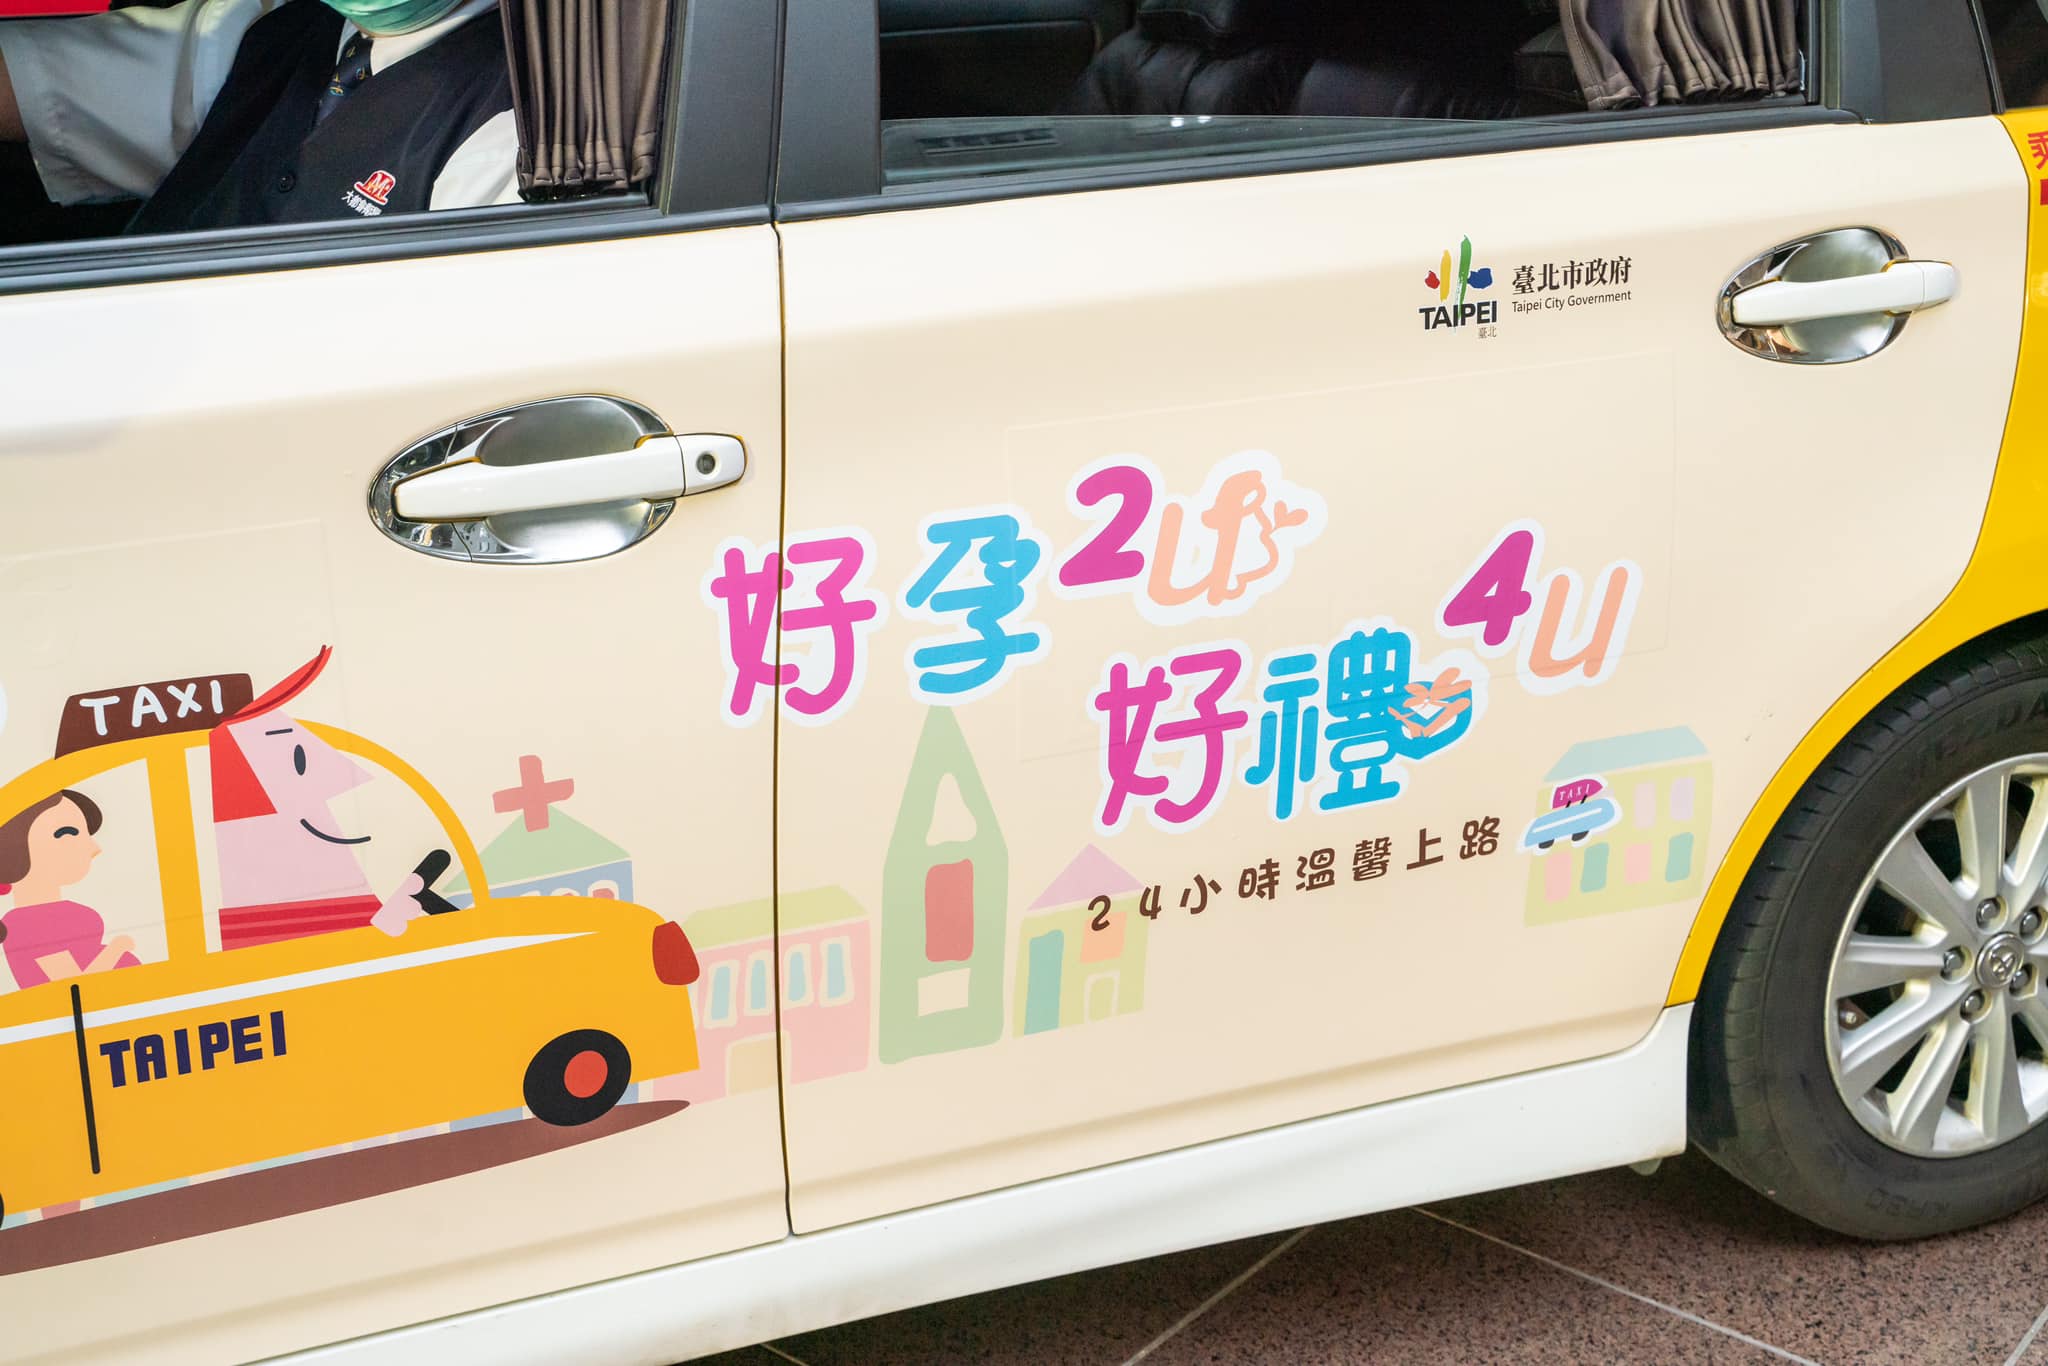 台北市好孕2U專車 補助懷孕婦女8000元乘車金